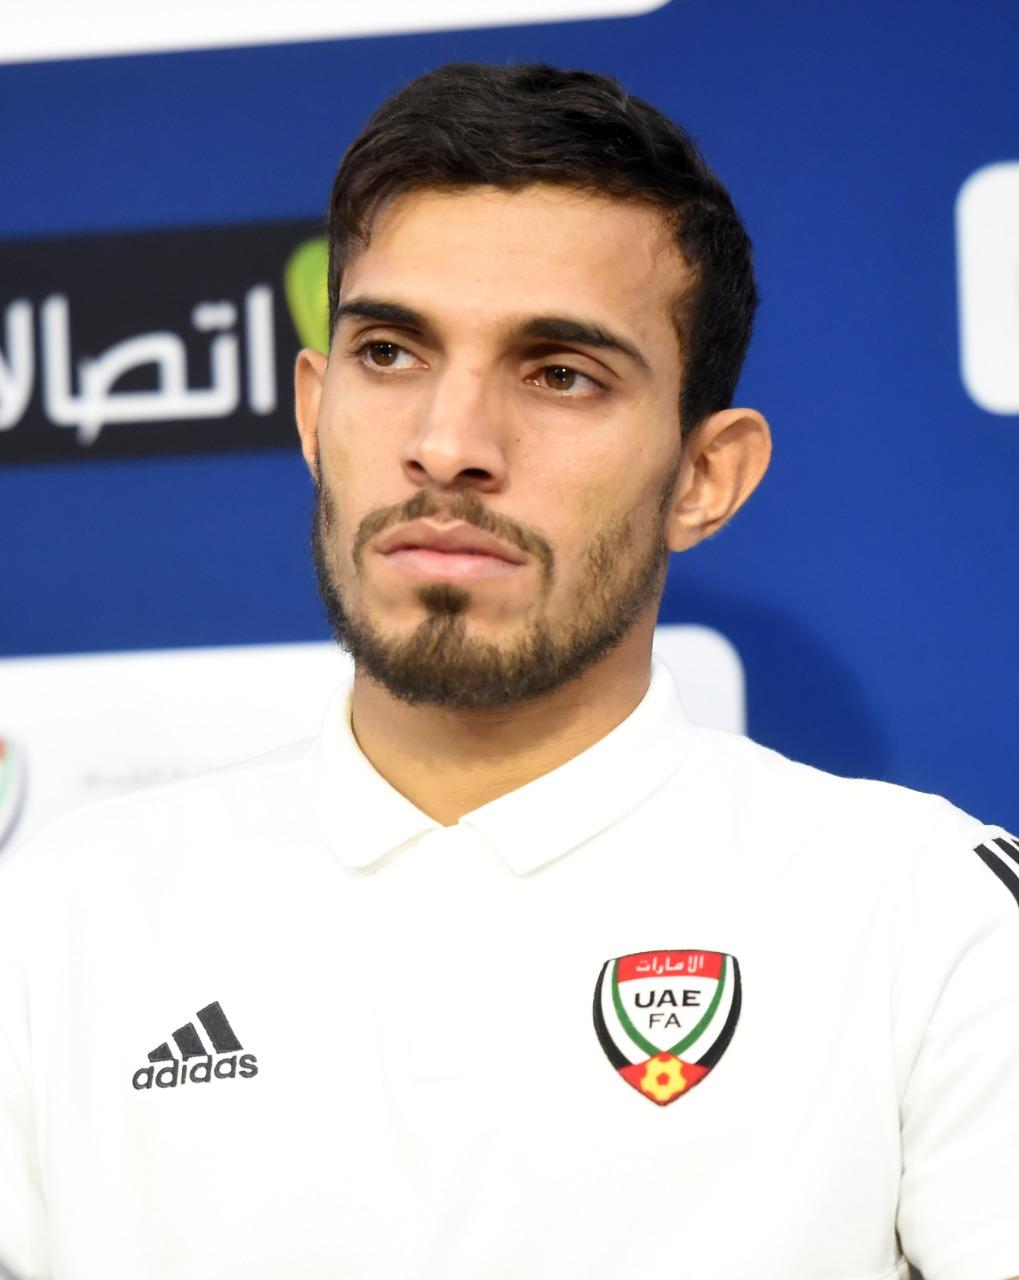 الإماراتي وليد عباس ضمن قائمة الأكثر خوضاً للمباريات الدولية وكأس الخليج